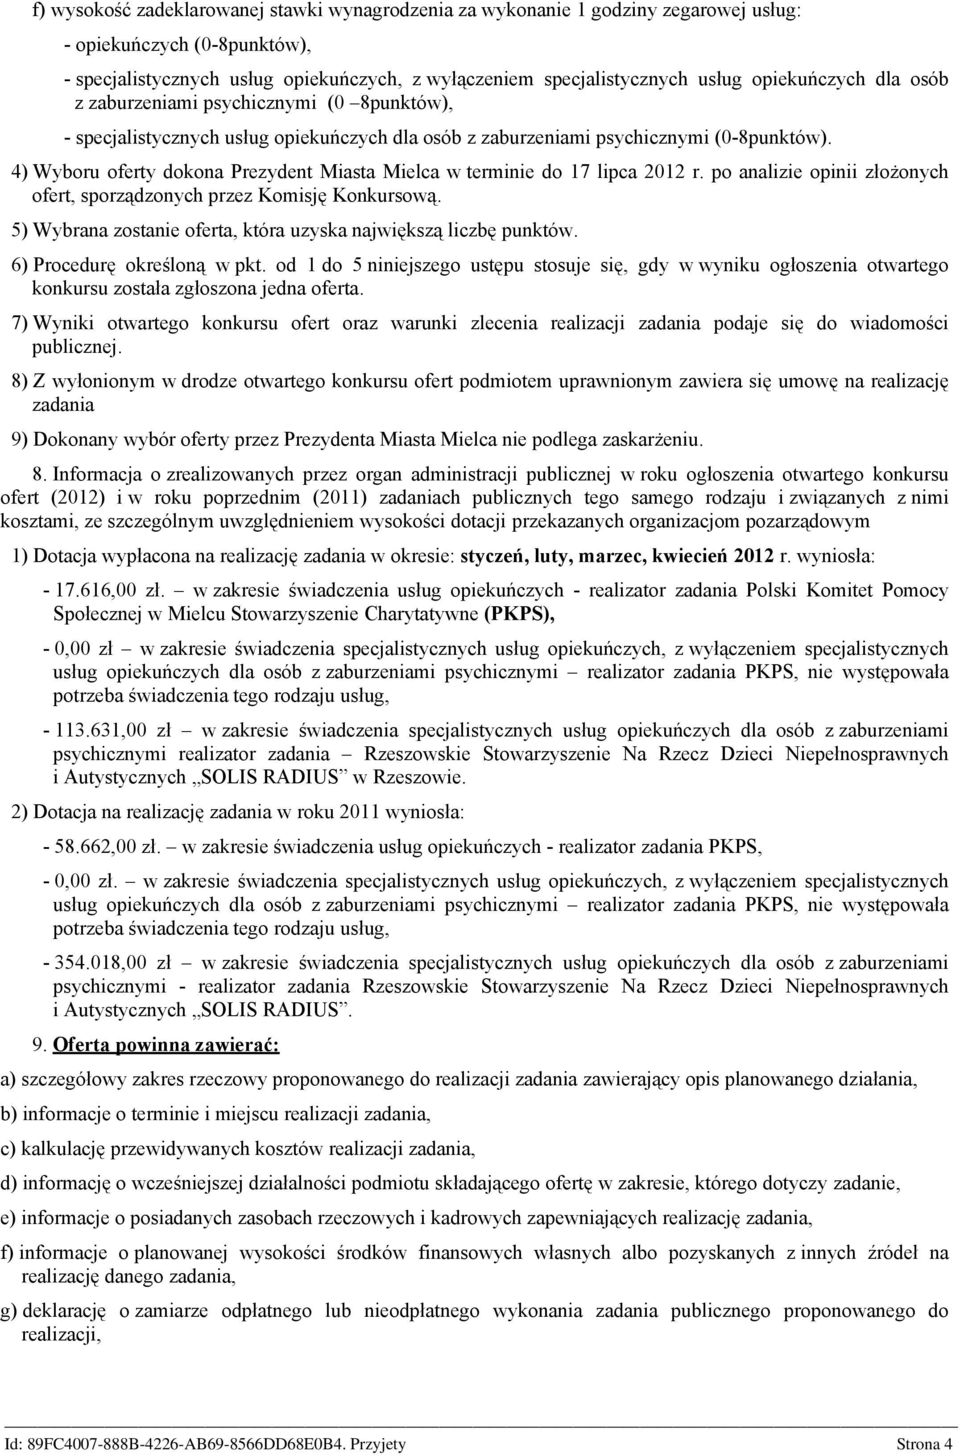 4) Wyboru oferty dokona Prezydent Miasta Mielca w terminie do 17 lipca 2012 r. po analizie opinii złożonych ofert, sporządzonych przez Komisję Konkursową.